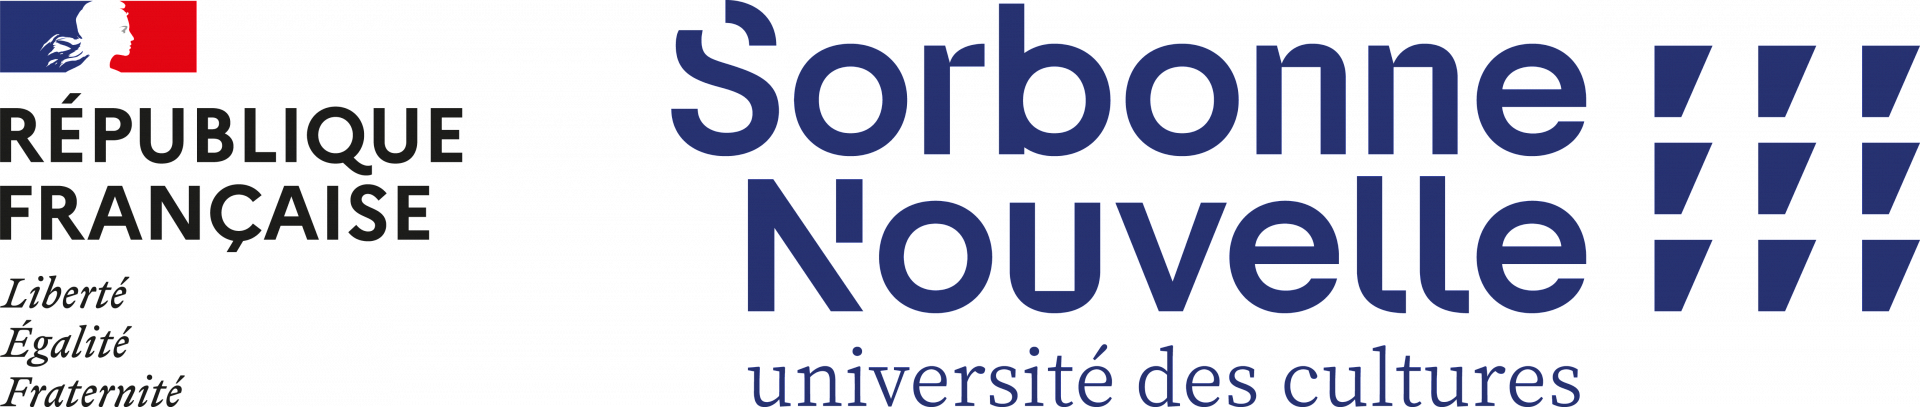 logo Republique Francais USN